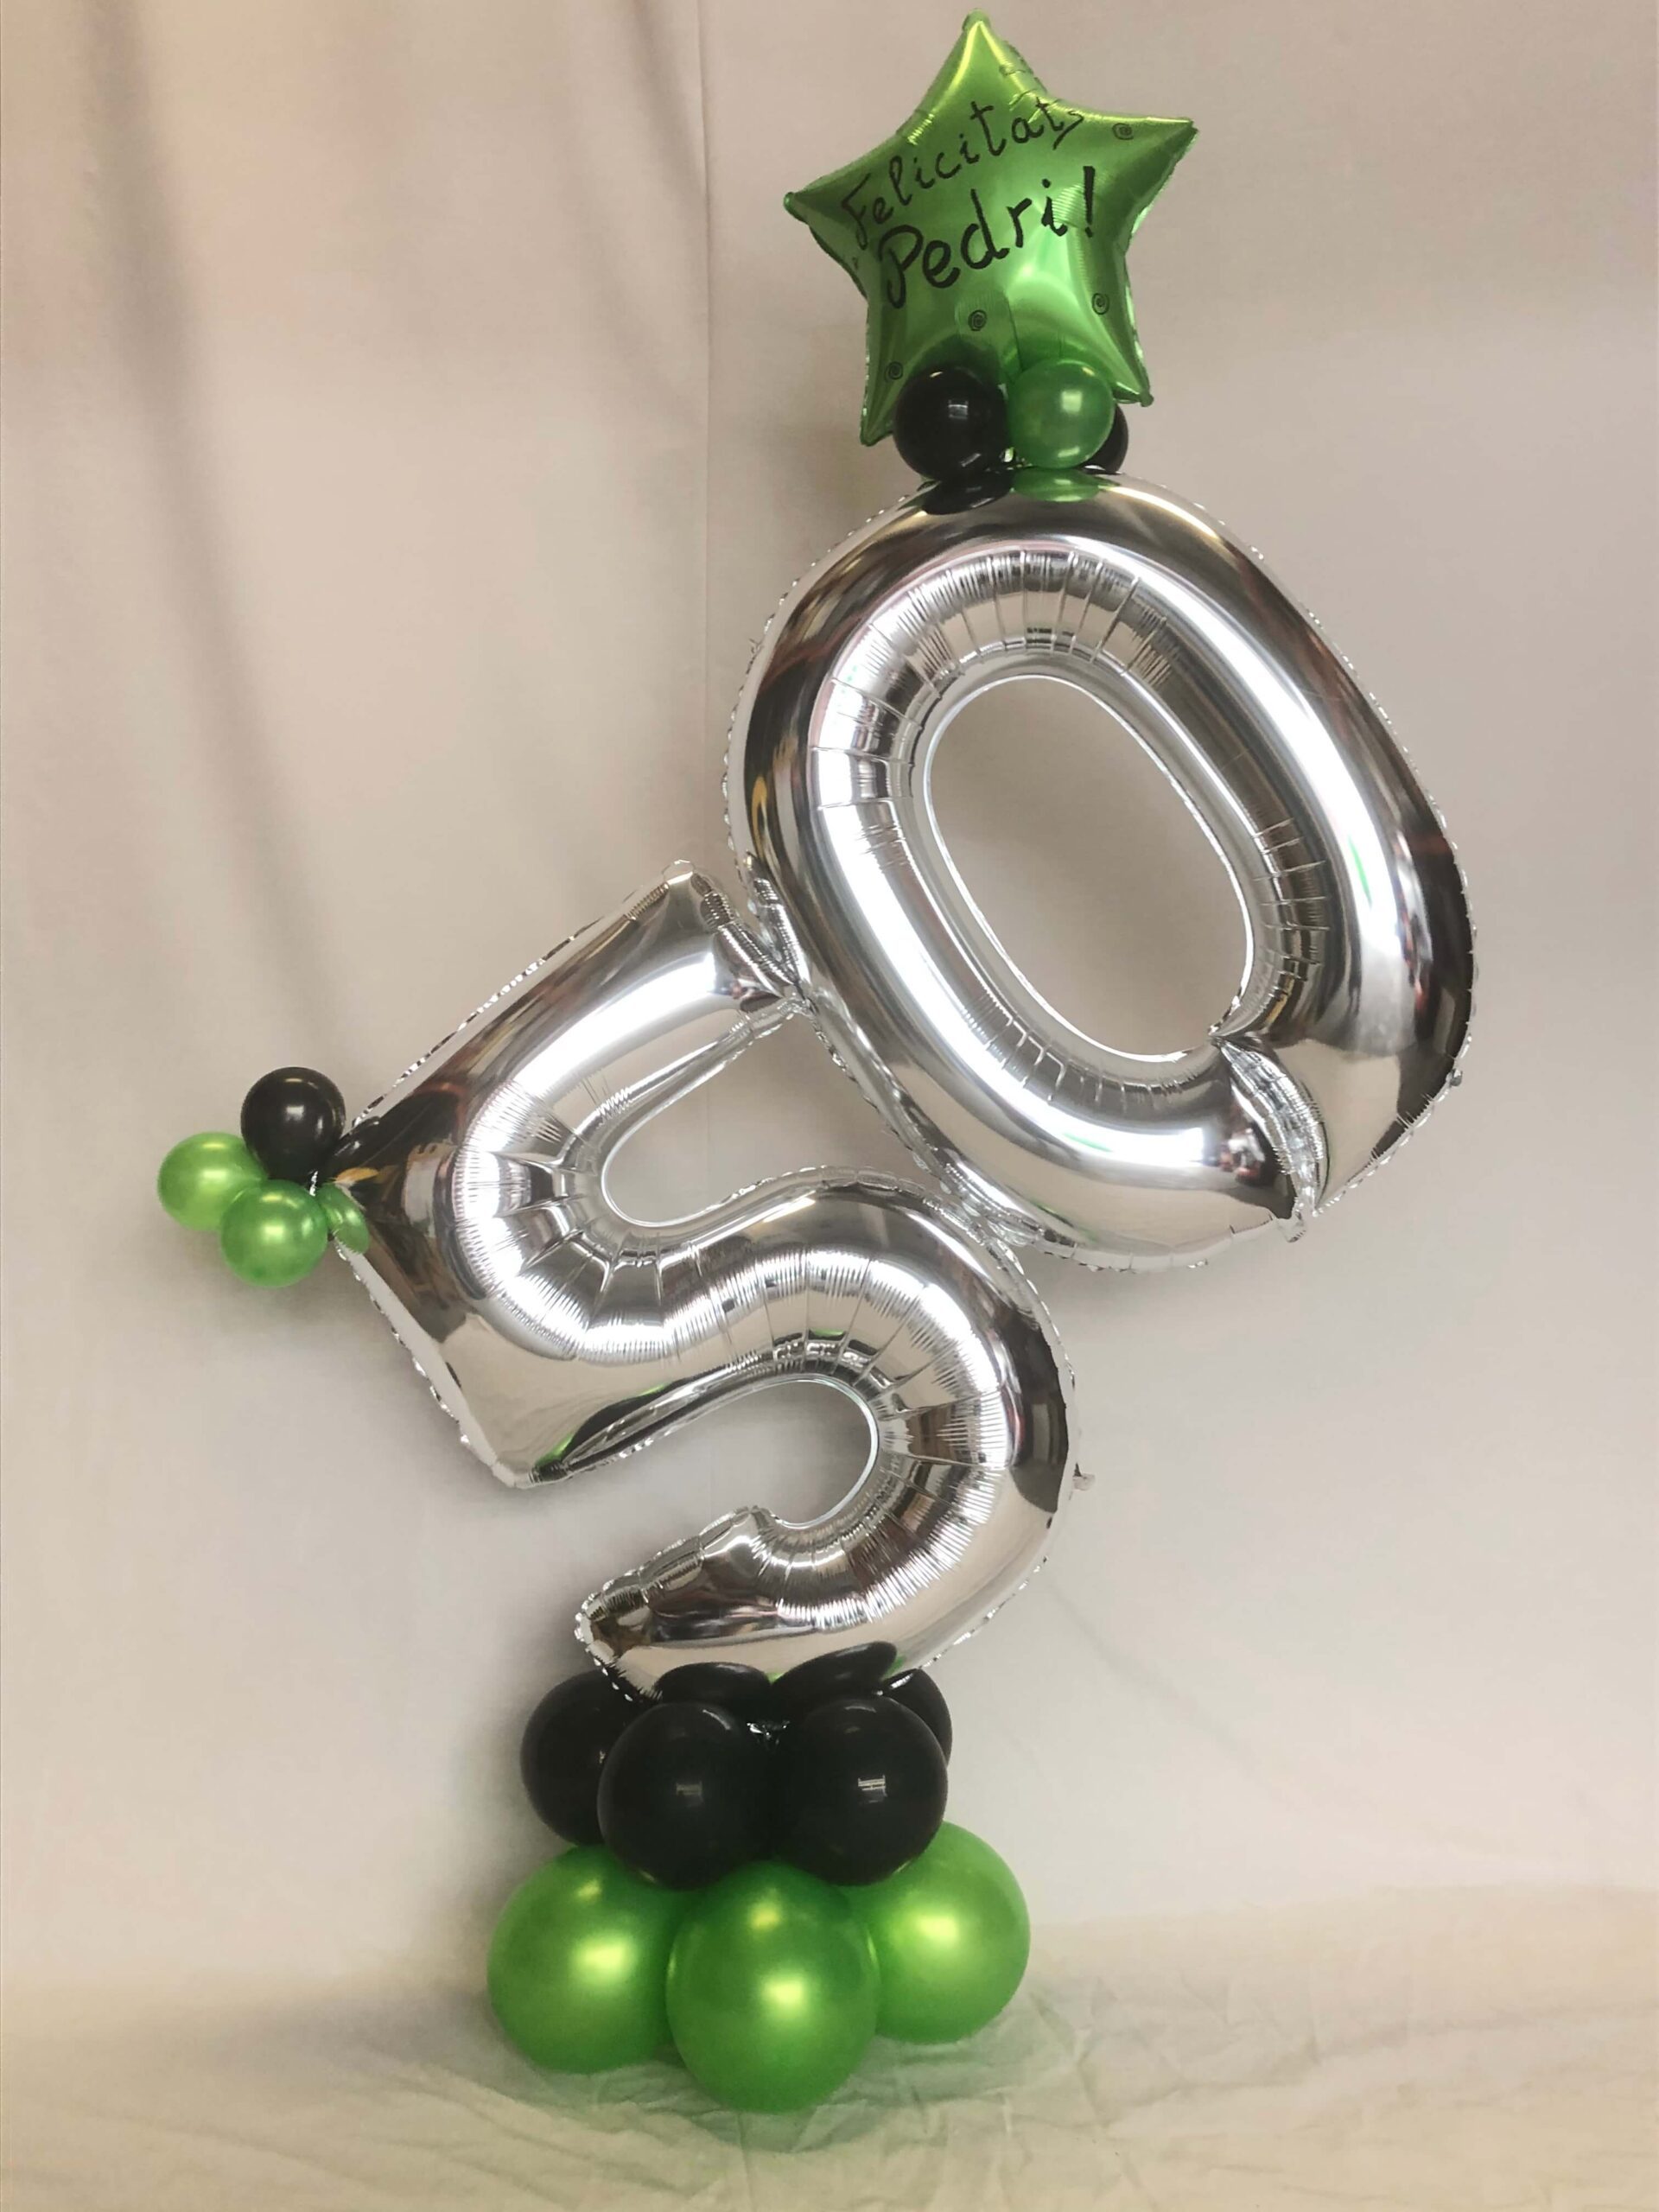 detalles con globos para cumpleaños - Giramón : Giramón